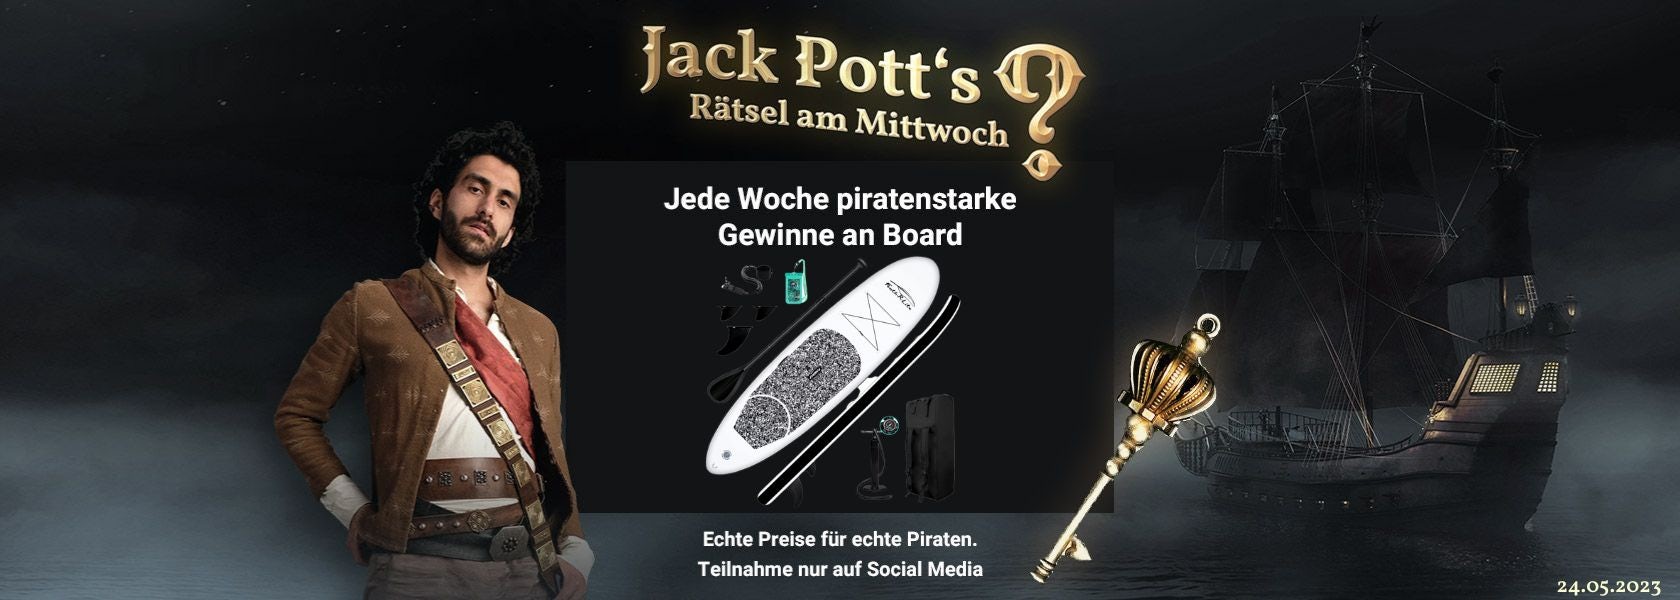 JPI-Header-Jack-Potts-Rätsel-Am-Mittwoch-2405